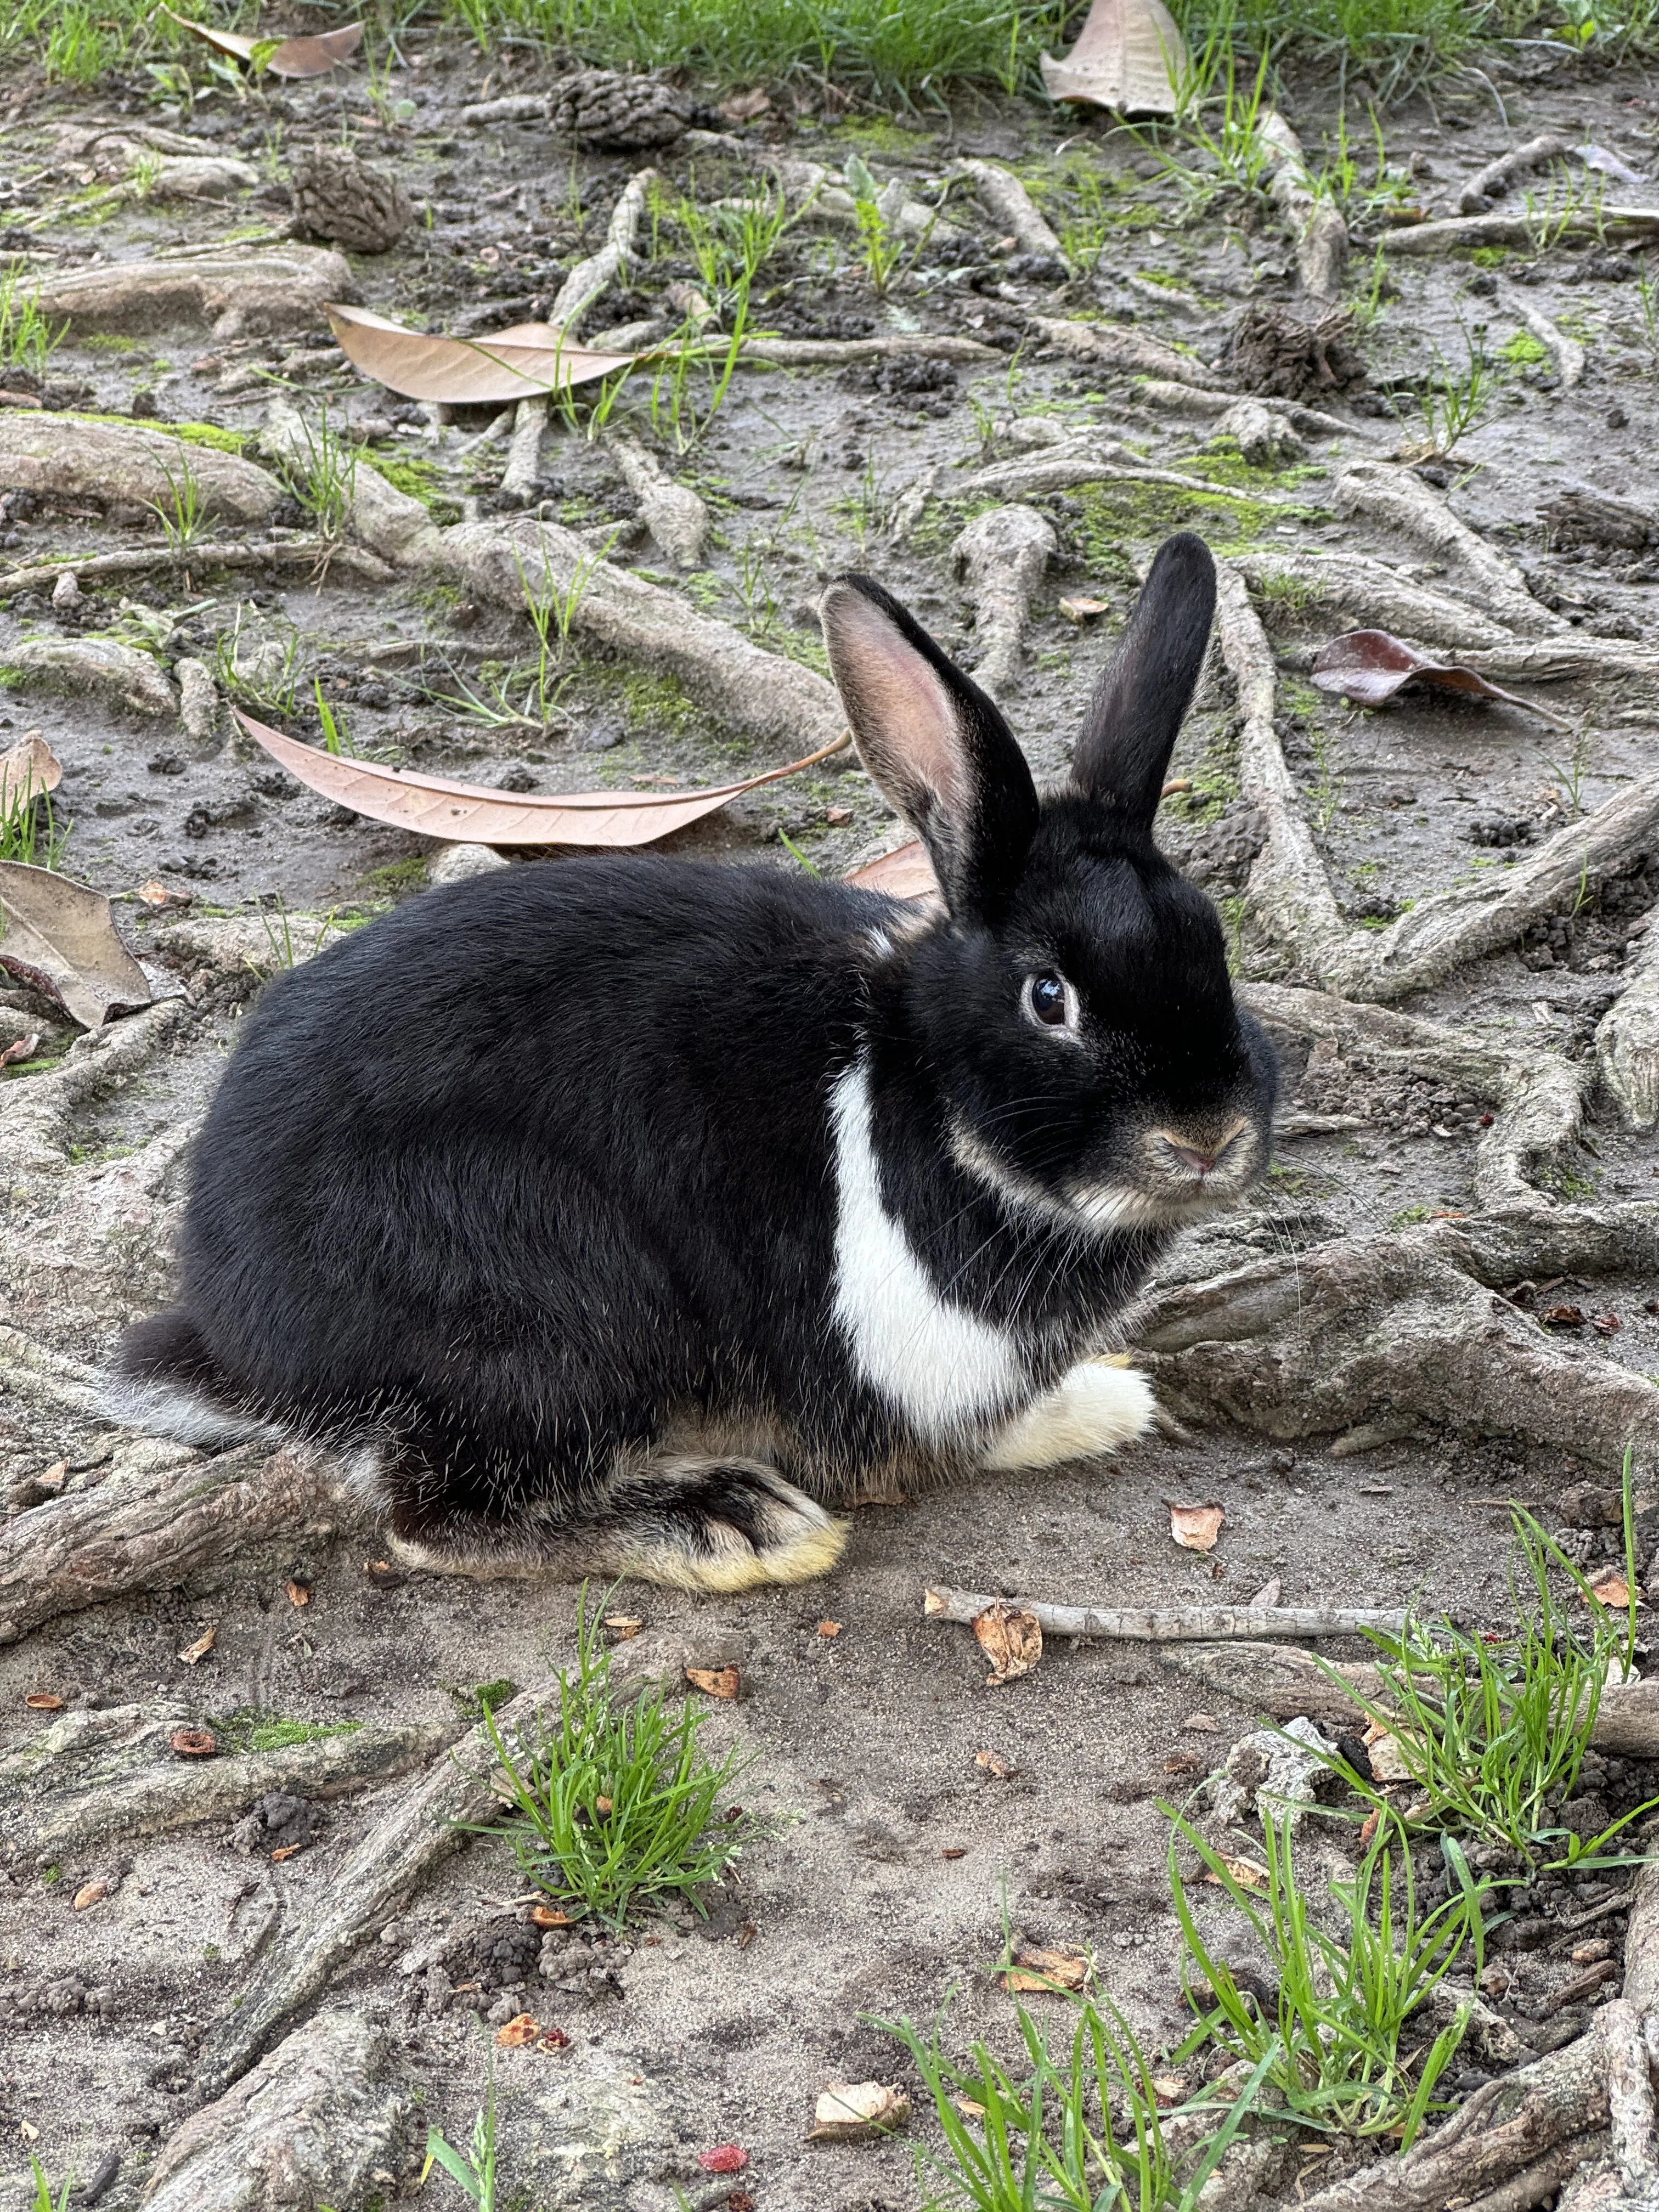 一张可爱兔子的未编辑照片。